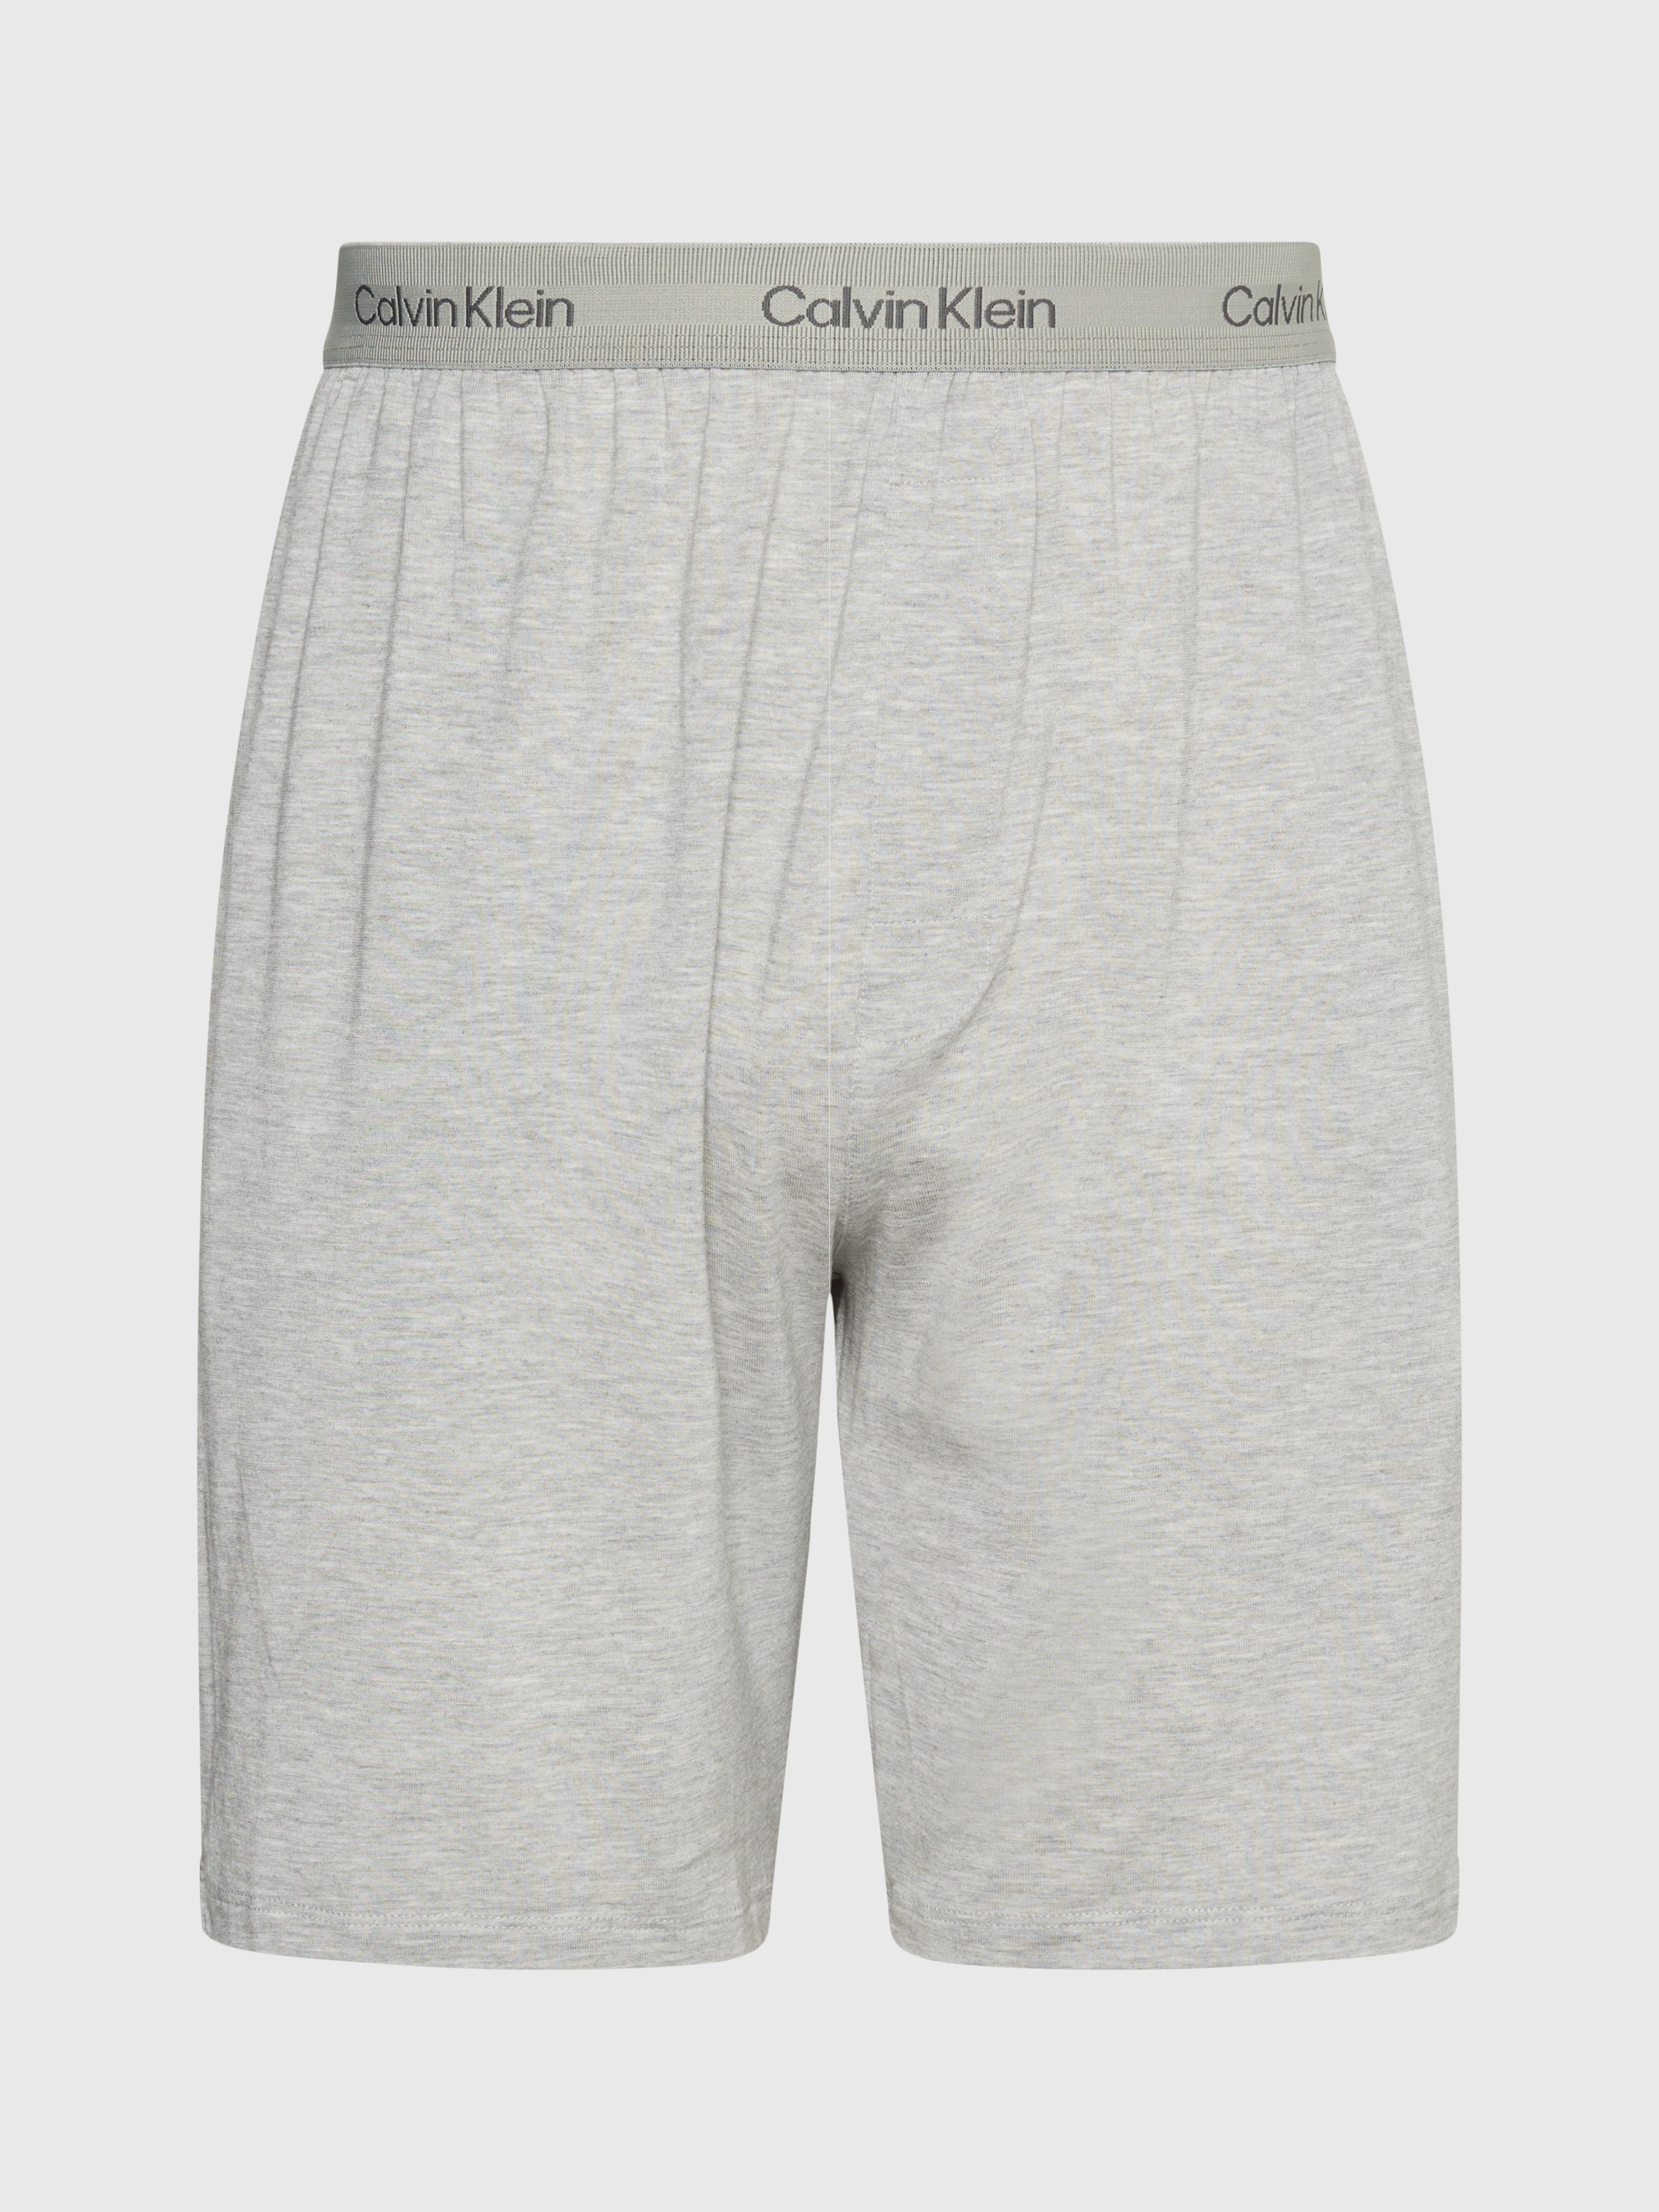 Calvin Klein Underwear Pyjamashorts »SLEEP SHORT«, mit elastischem Bund